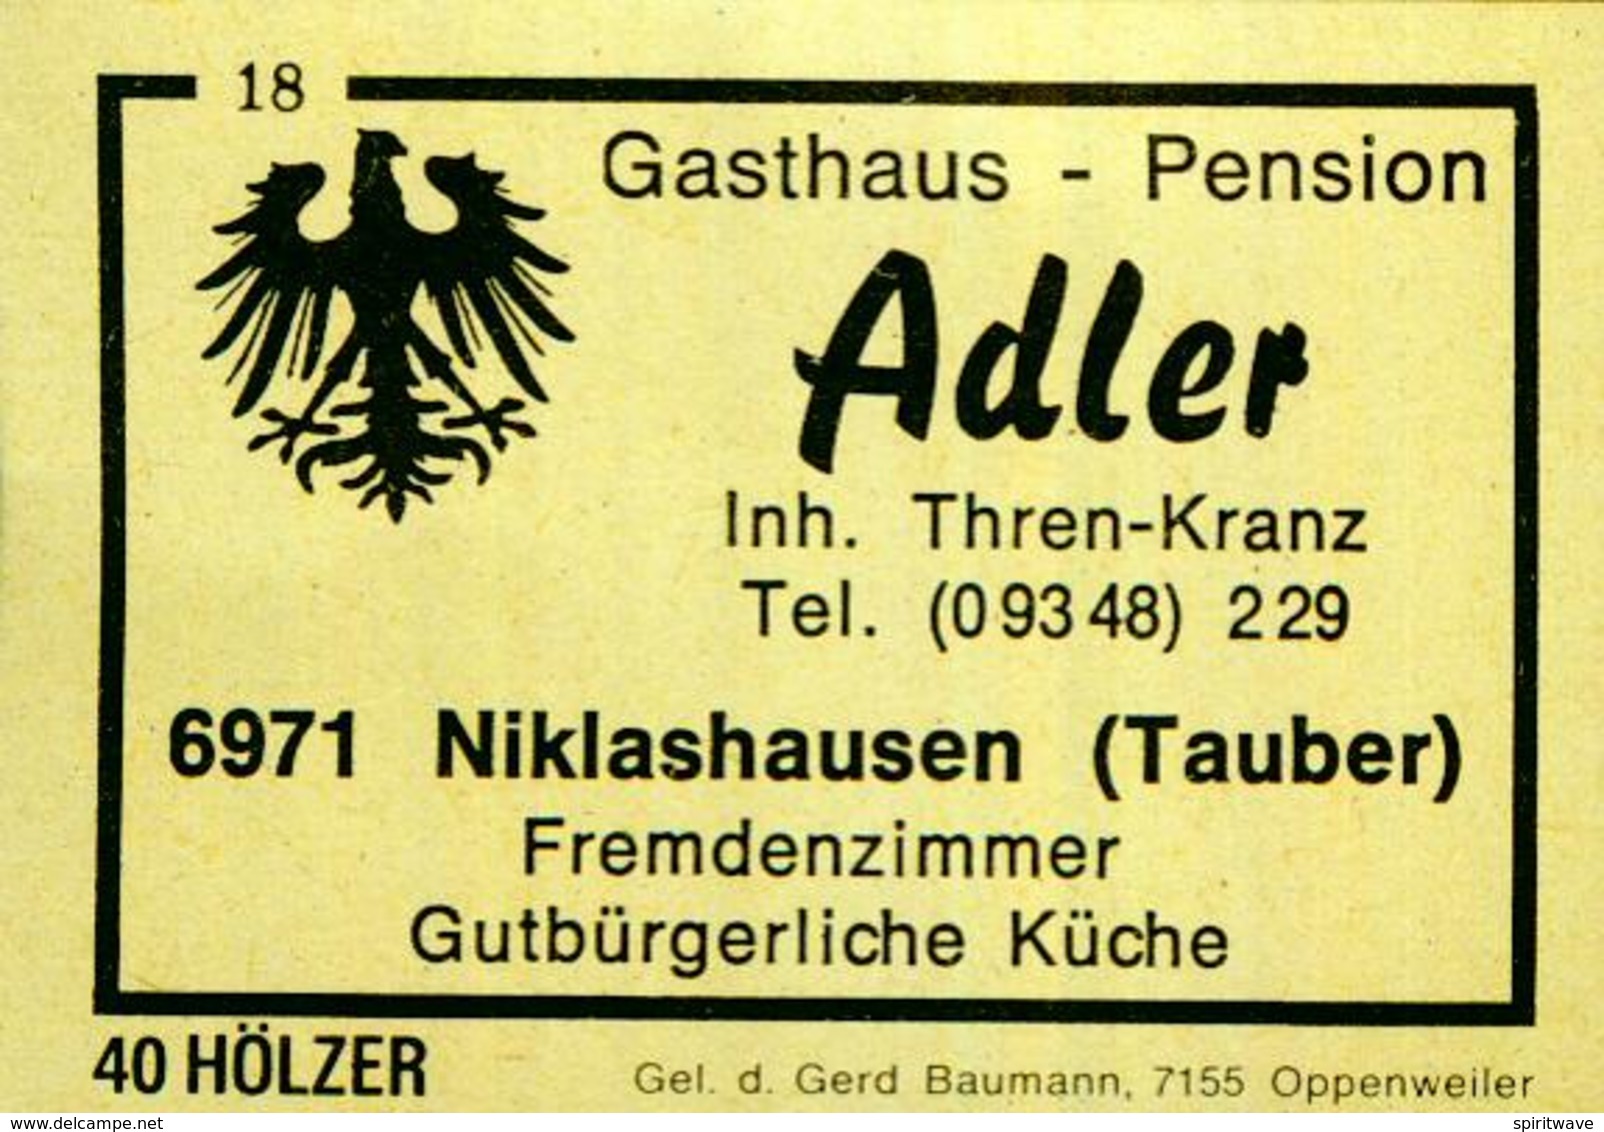 1 Altes Gasthausetikett, Gasthaus – Pension	Adler, Inh. Thren-Kranz, 6971 Niklashausen (Tauber) #198 - Luciferdozen - Etiketten